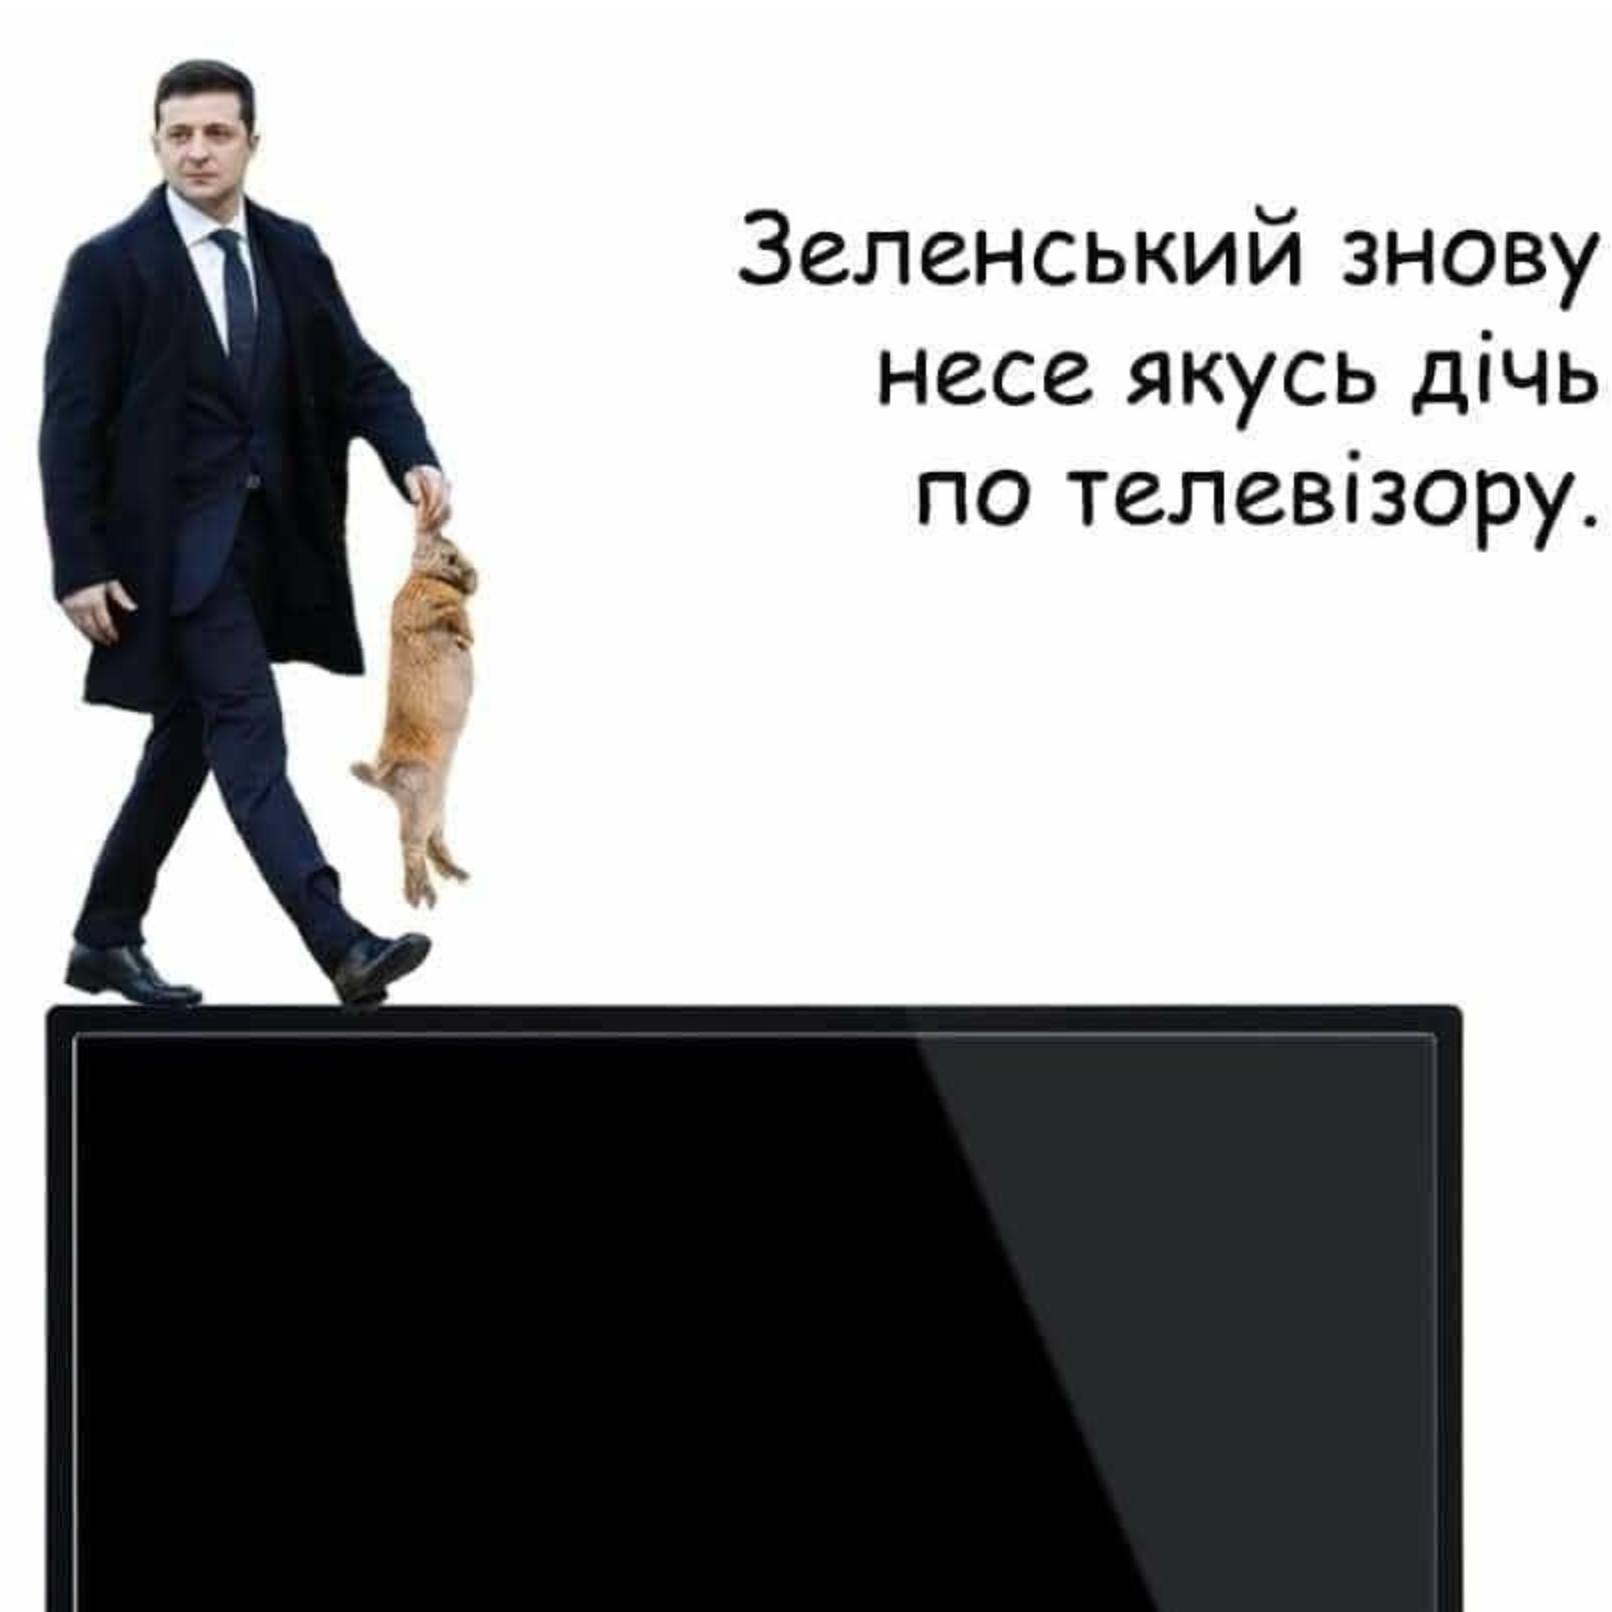 Как в соцсетях высмеяли пресс-марафон Зеленского: подборка лучших мемов - 7 - изображение